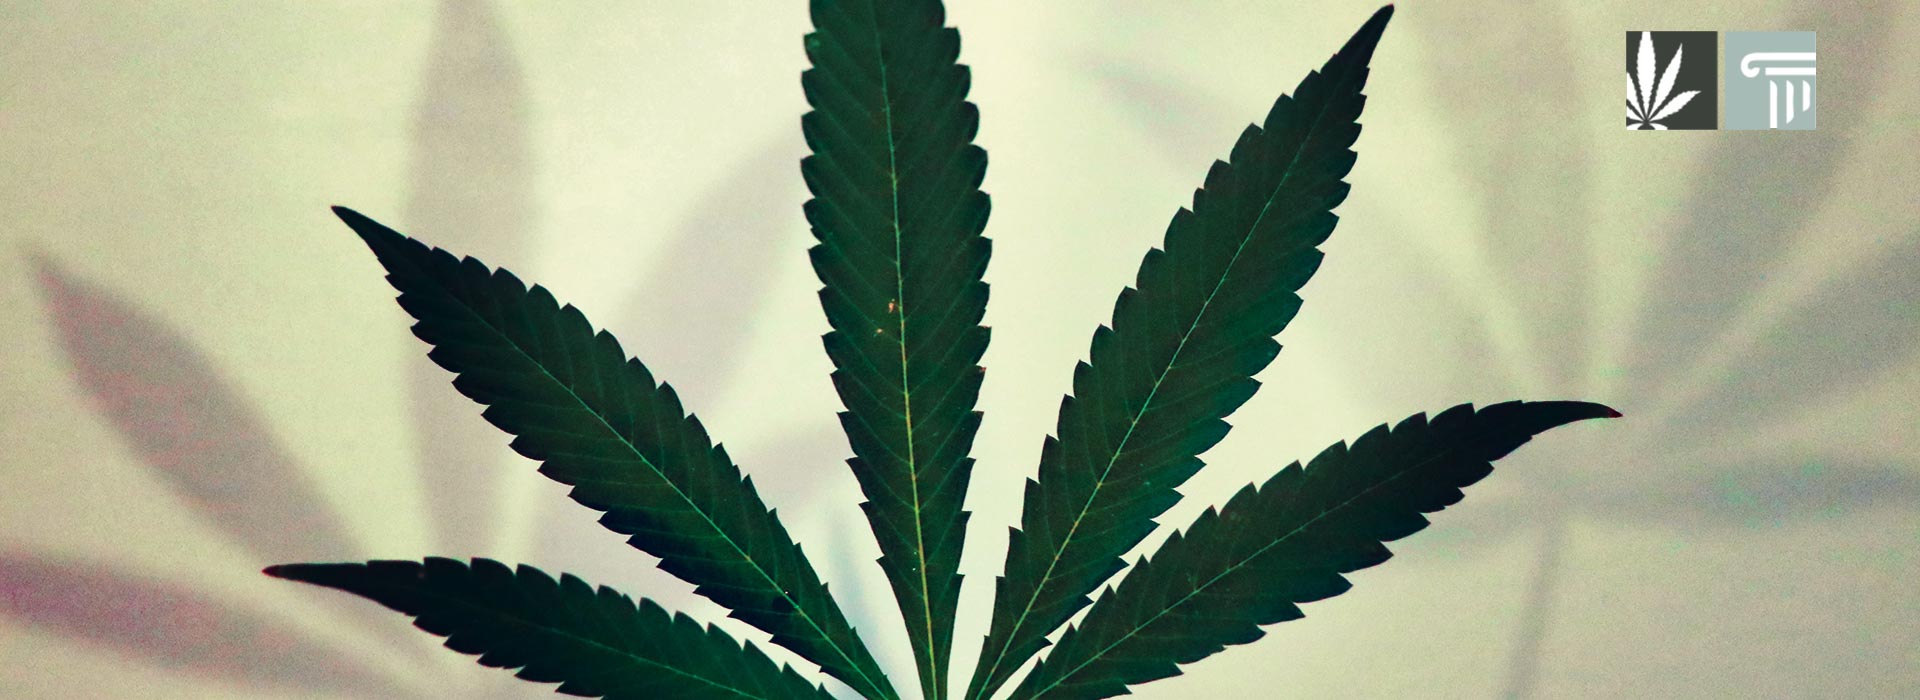 iowa marijuana legalization